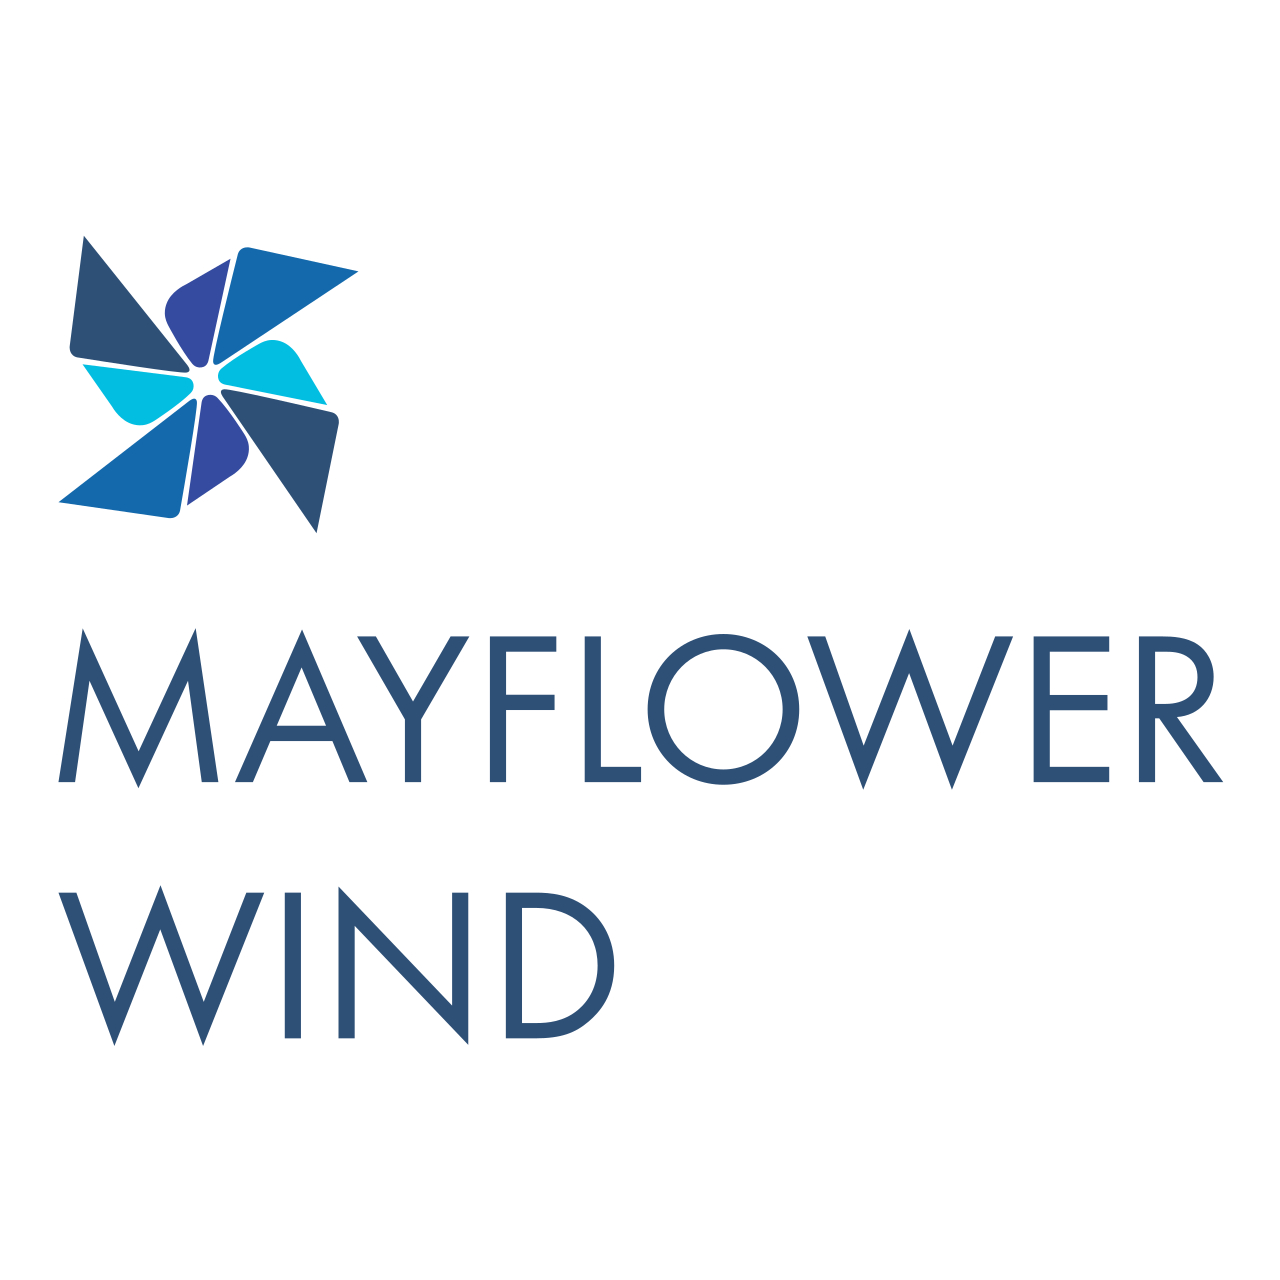 Mayflower wind logo